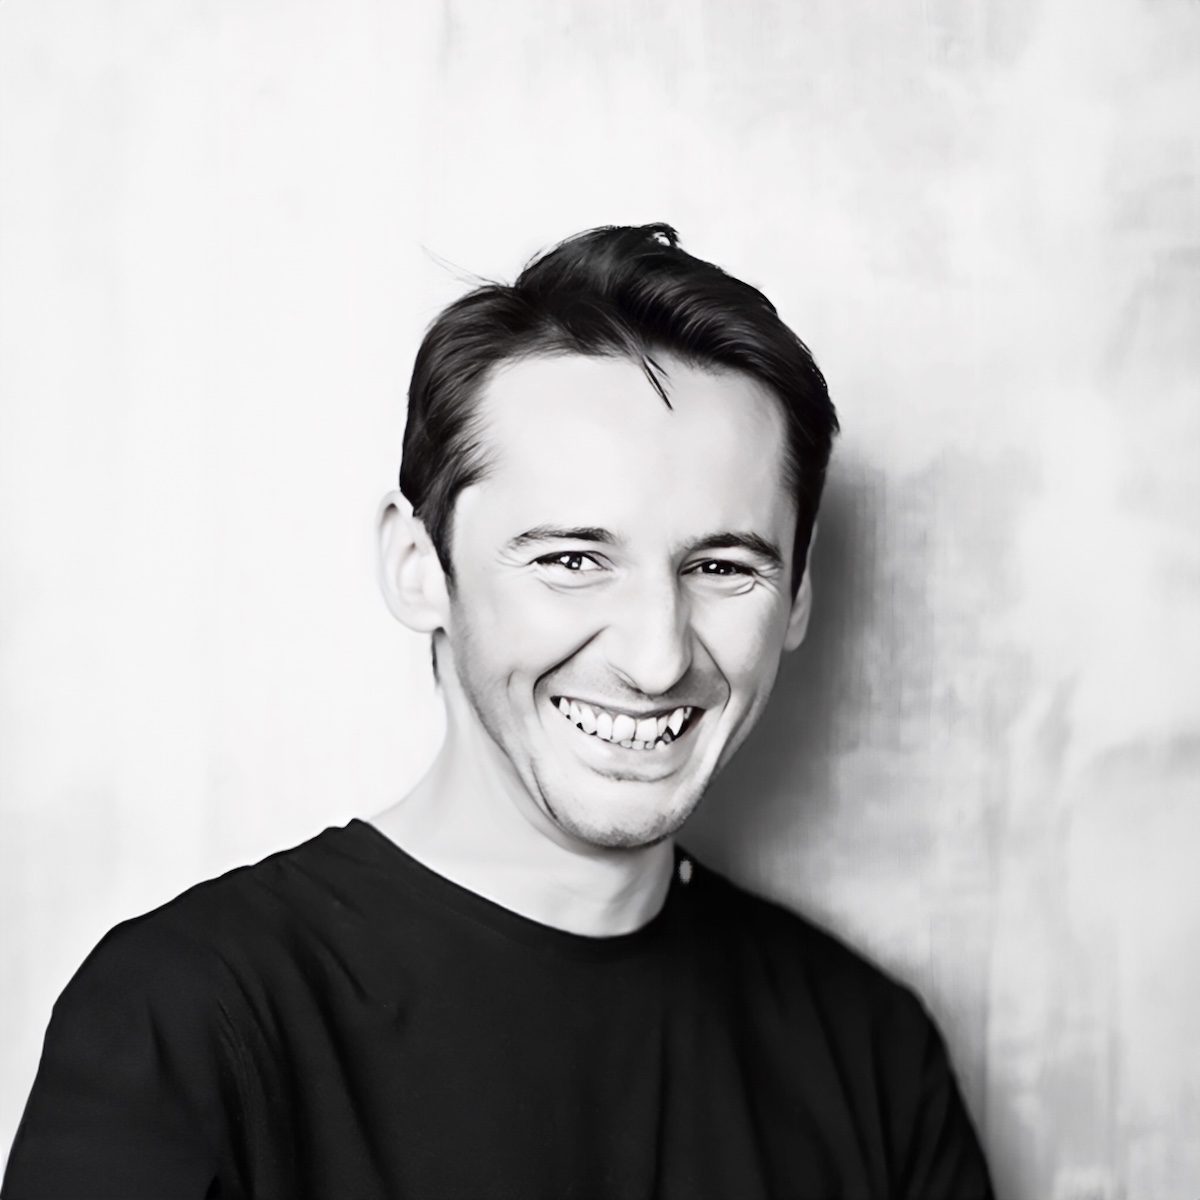 Porträt von Denis, einem Meisterfriseur und Kollegen im Salon, mit einem warmen, einladenden Lächeln und einem stilvollen Haarschnitt, in einem schwarzen Hemd vor einem strukturierten grauen Hintergrund.